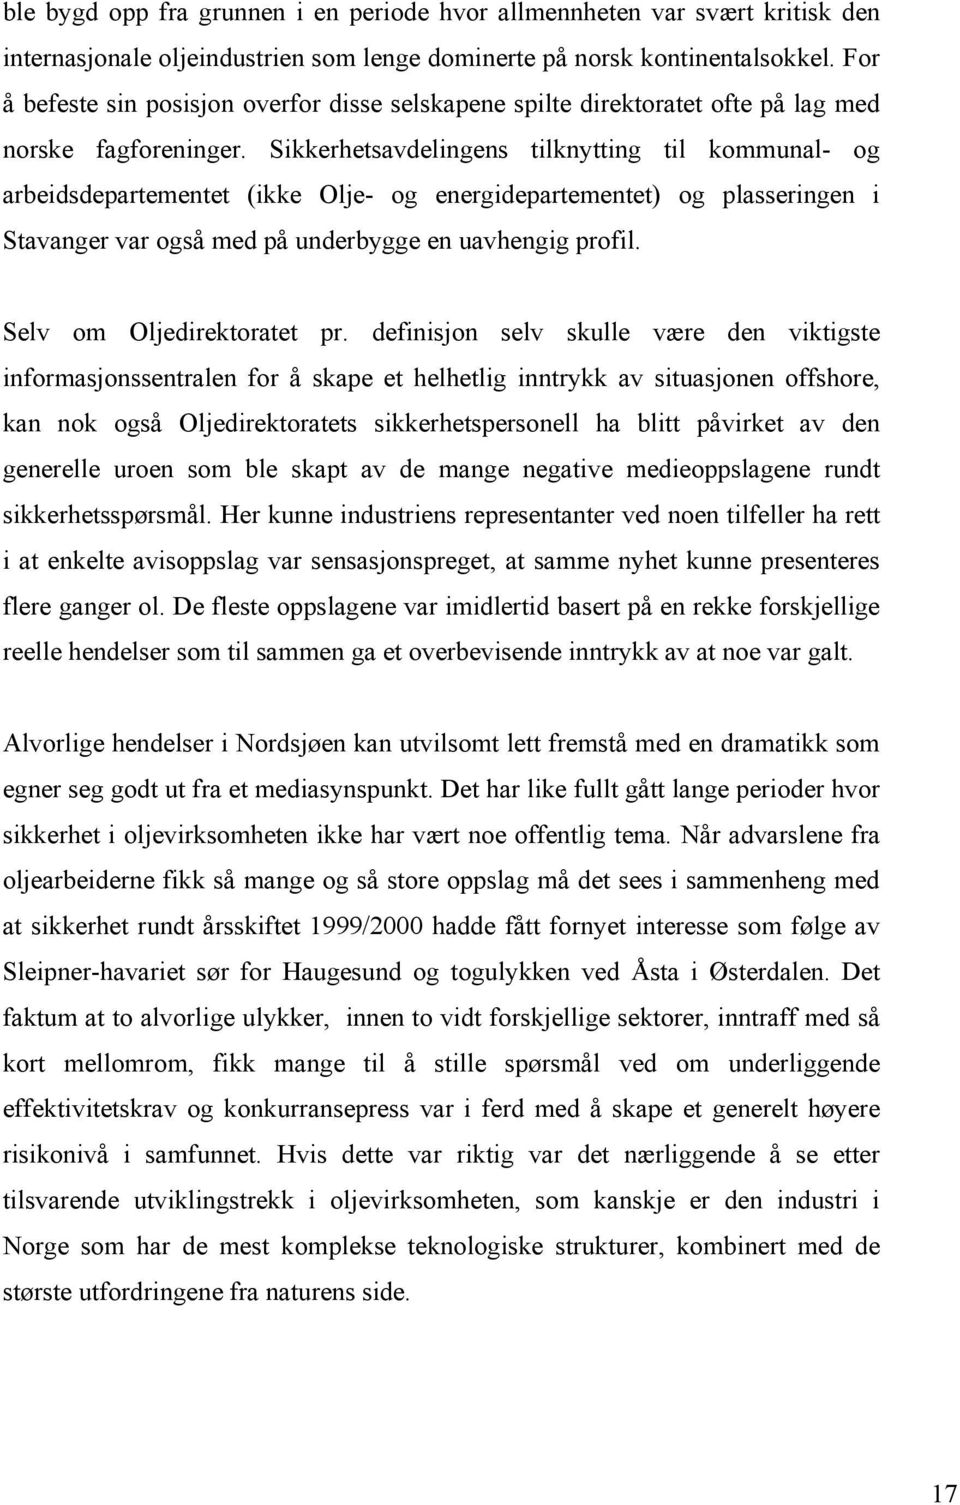 Sikkerhetsavdelingens tilknytting til kommunal- og arbeidsdepartementet (ikke Olje- og energidepartementet) og plasseringen i Stavanger var også med på underbygge en uavhengig profil.